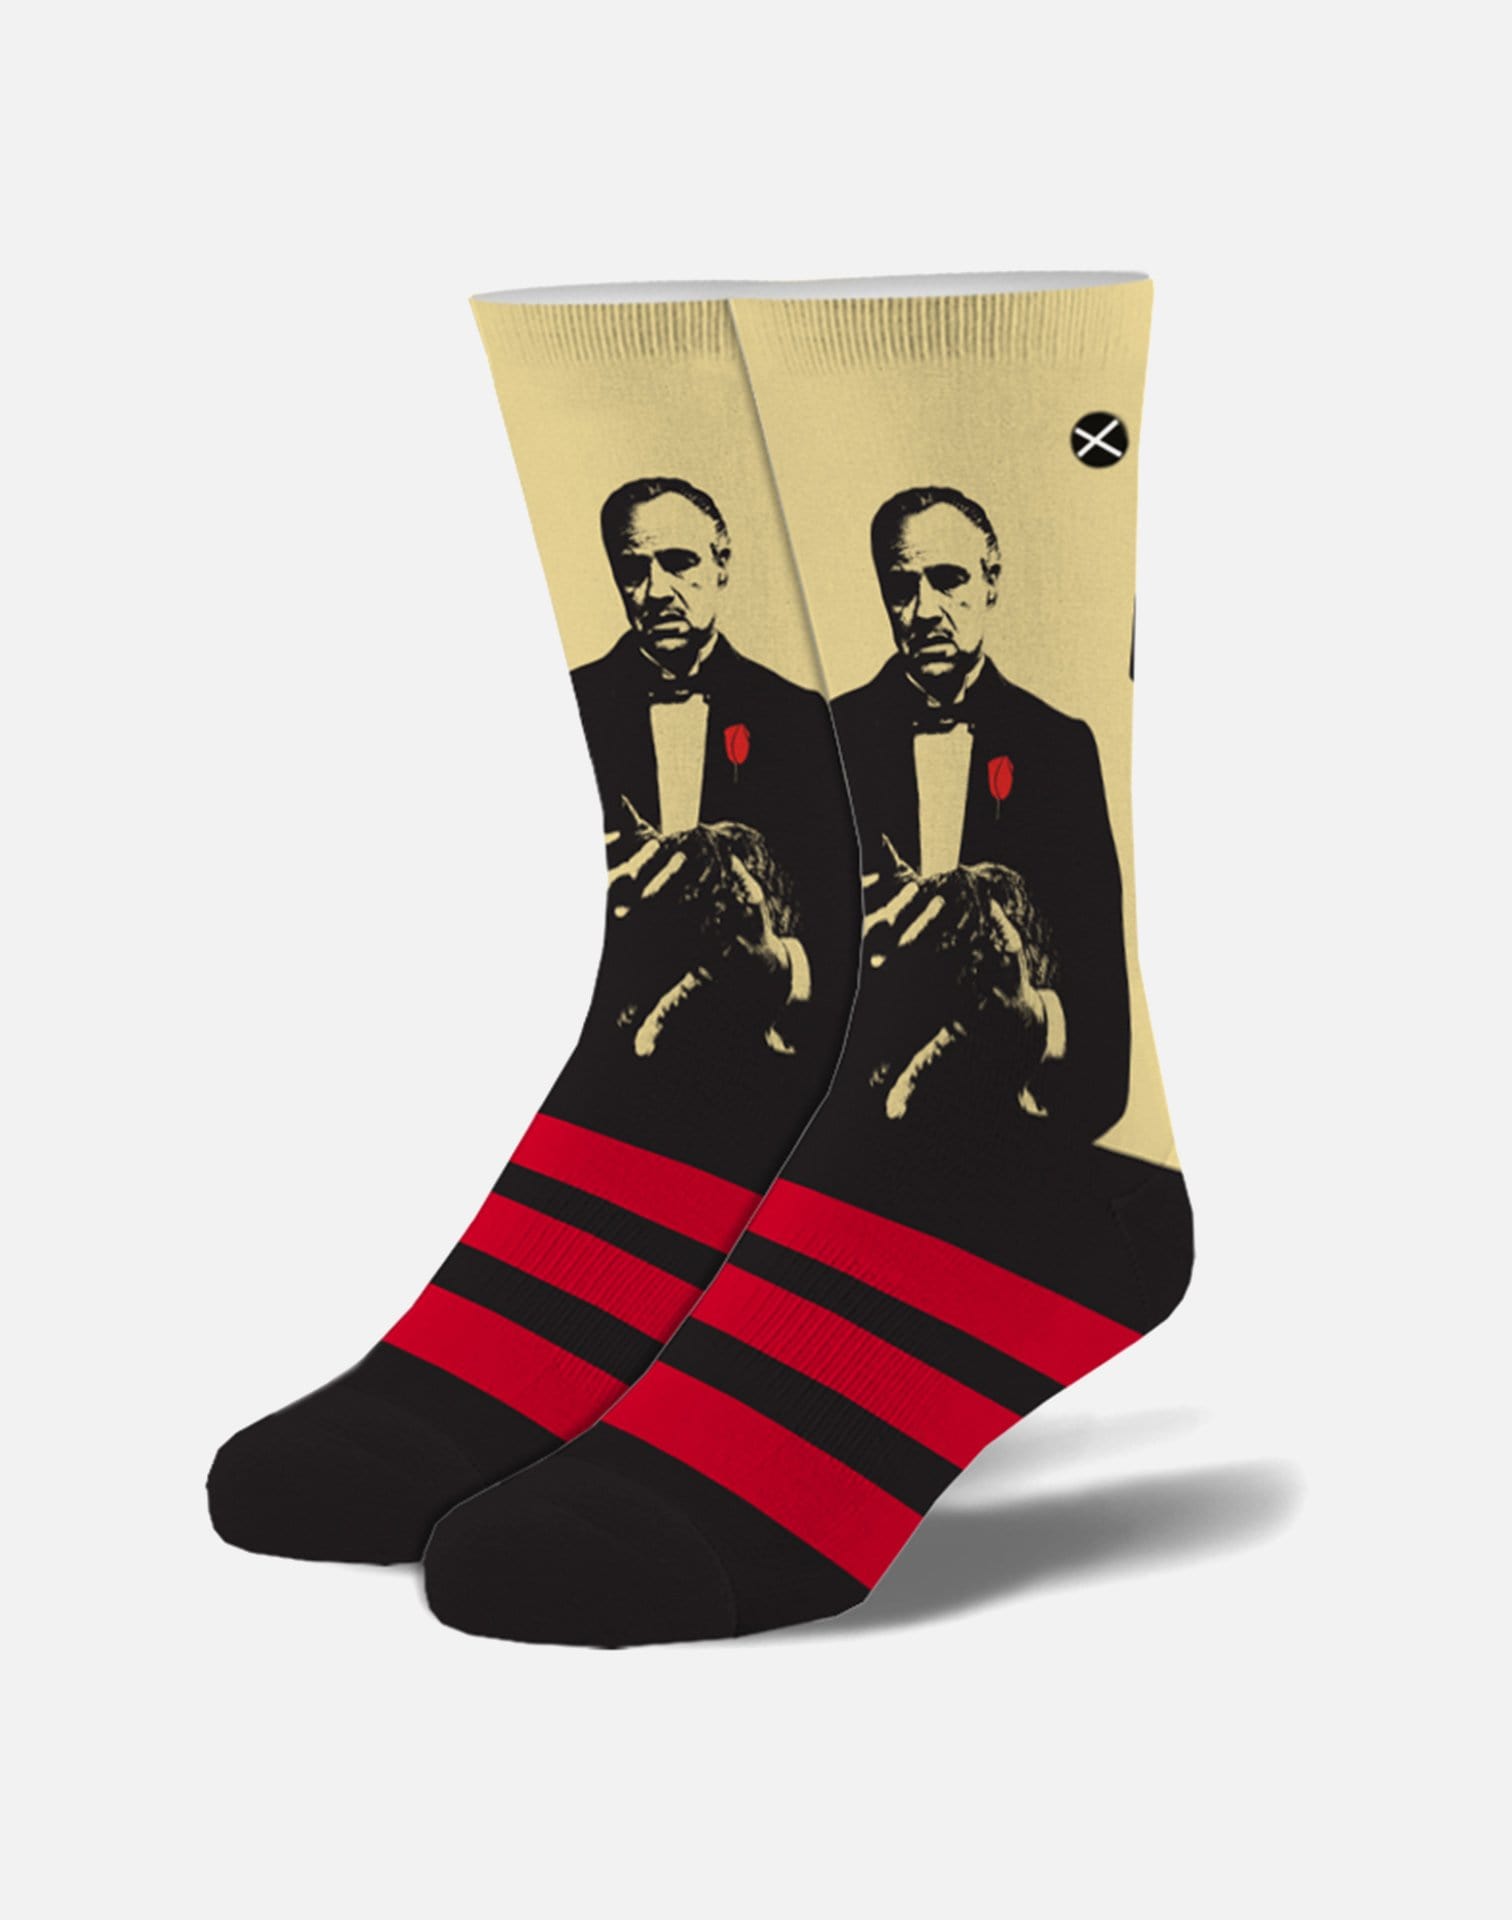 Odd Sox Don Corleone Crew Socks